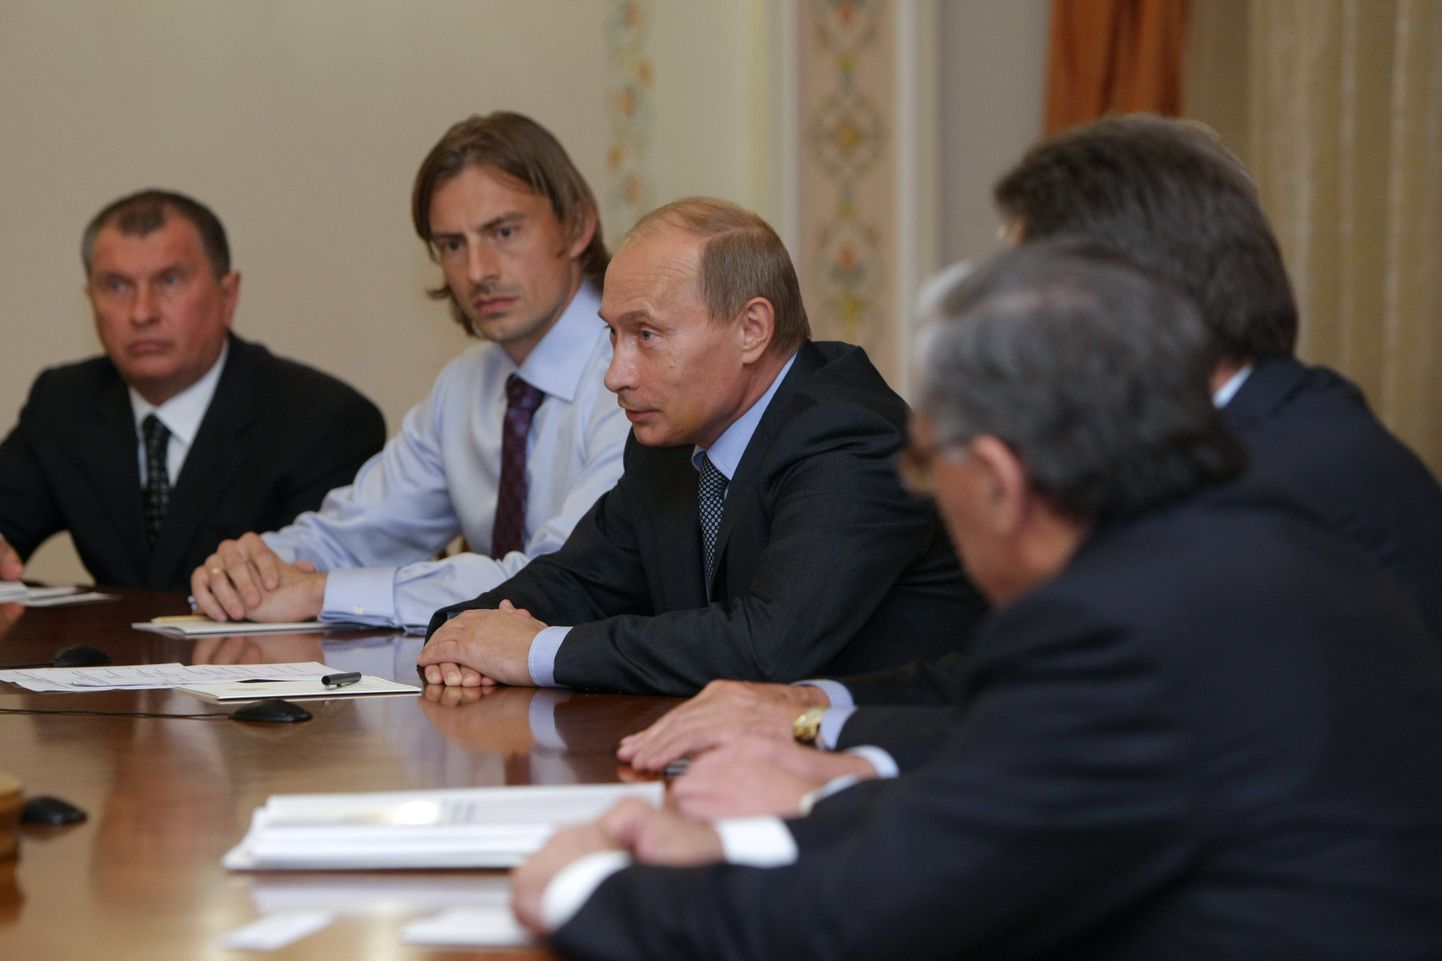 Venemaa peaminister Vladimir Putin ja Eesti jalgpallikoondise esiväravavaht Sergei Pareiko ühikse nõupidamislaua taga.